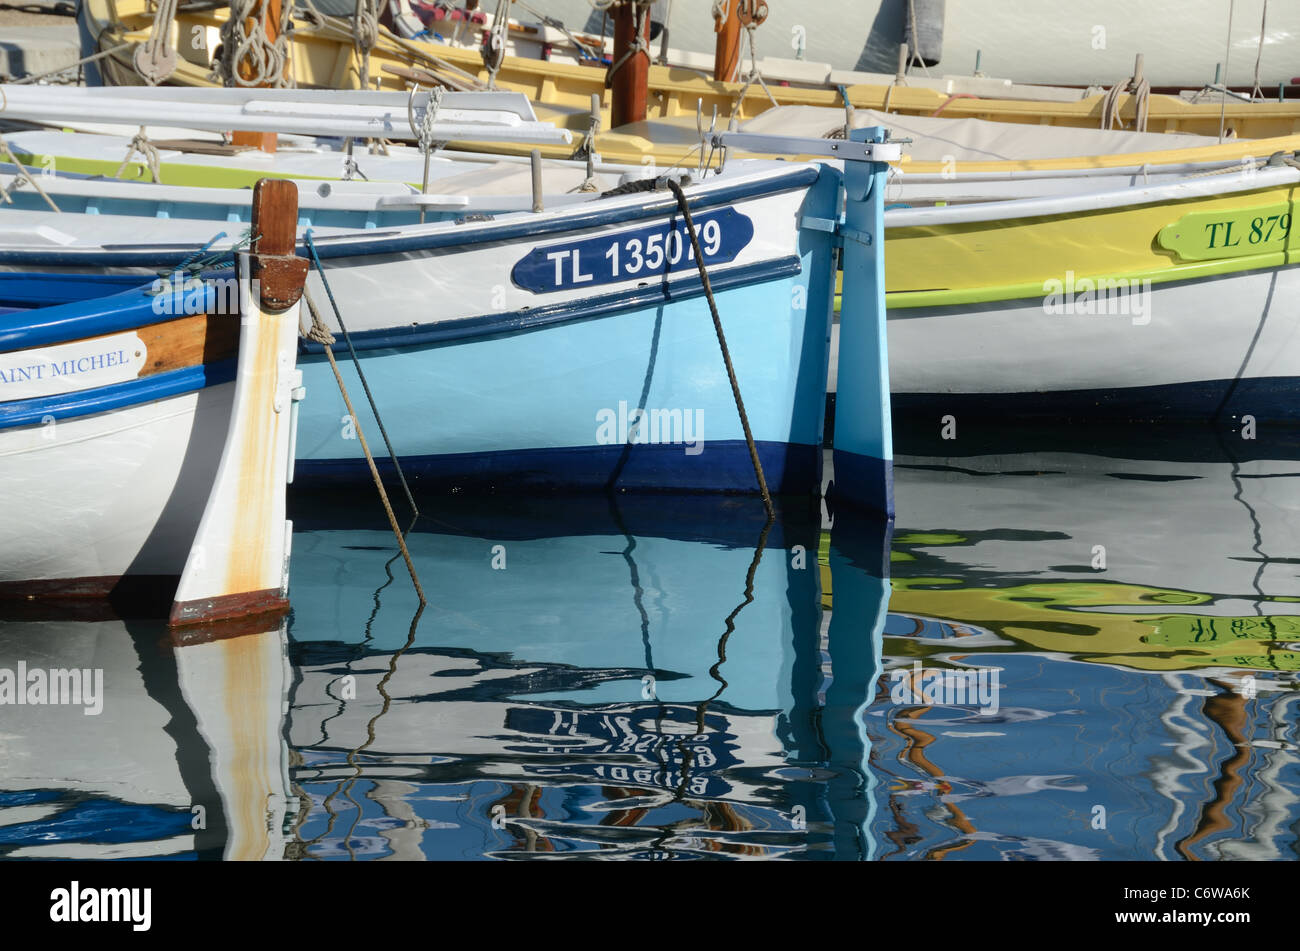 Bunte Holzboote, Ruderboote oder Fischerboote & Reflektionen im alten Hafen Sanary oder Sanary-sur-Mer Cote d'Azur Südfrankreich Stockfoto